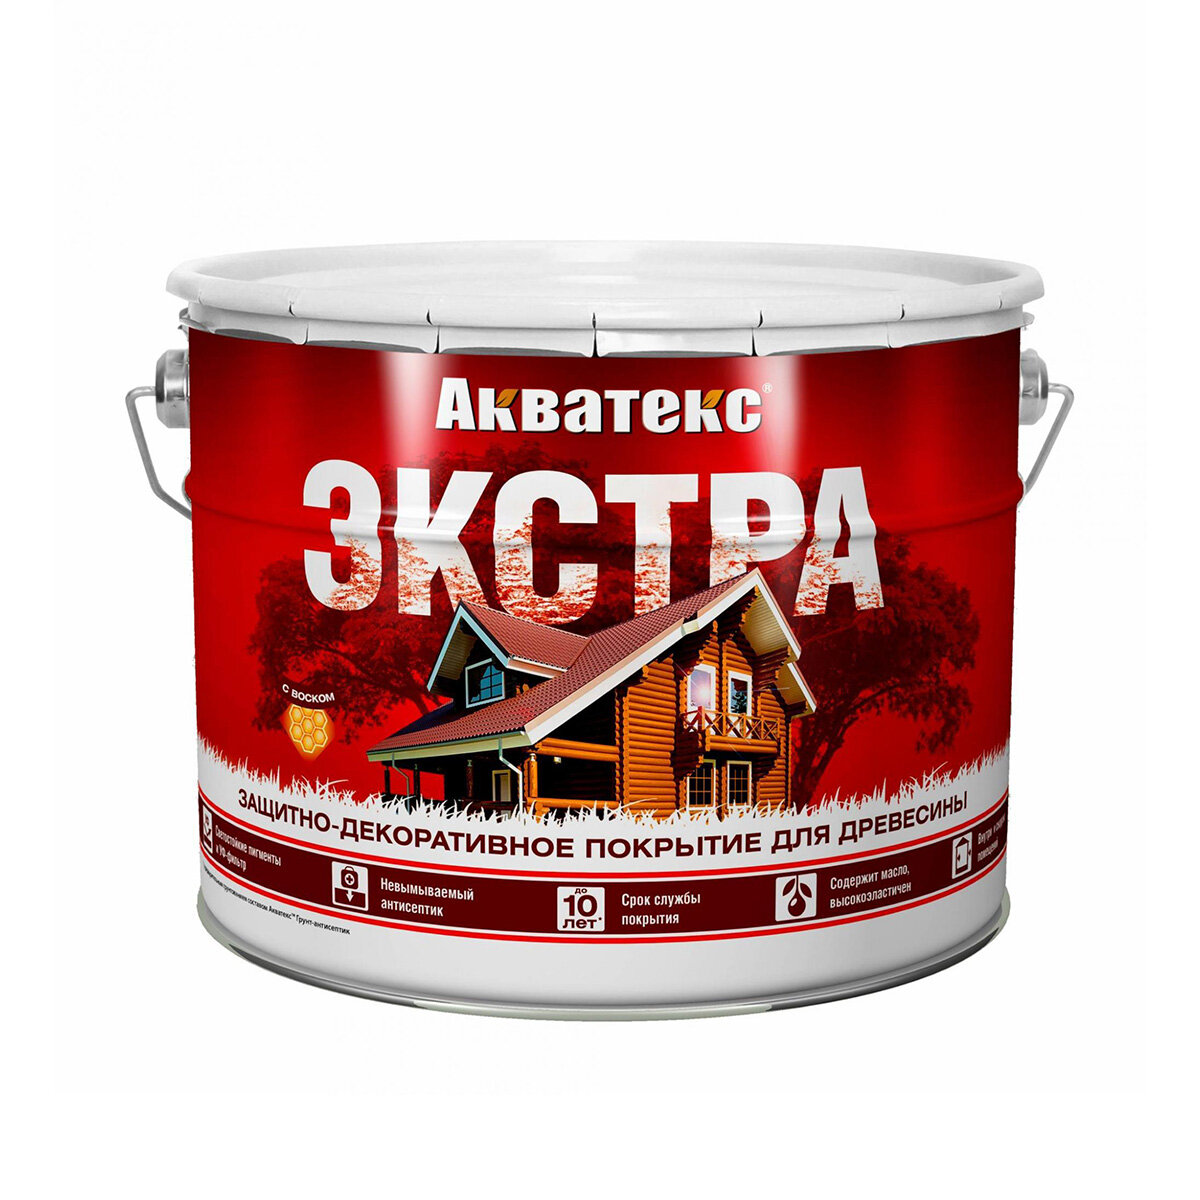 Акватекс Акватекс-Экстра защитно-декоративное покрытие для древесины алкидное полуглянцевое рябина 27л